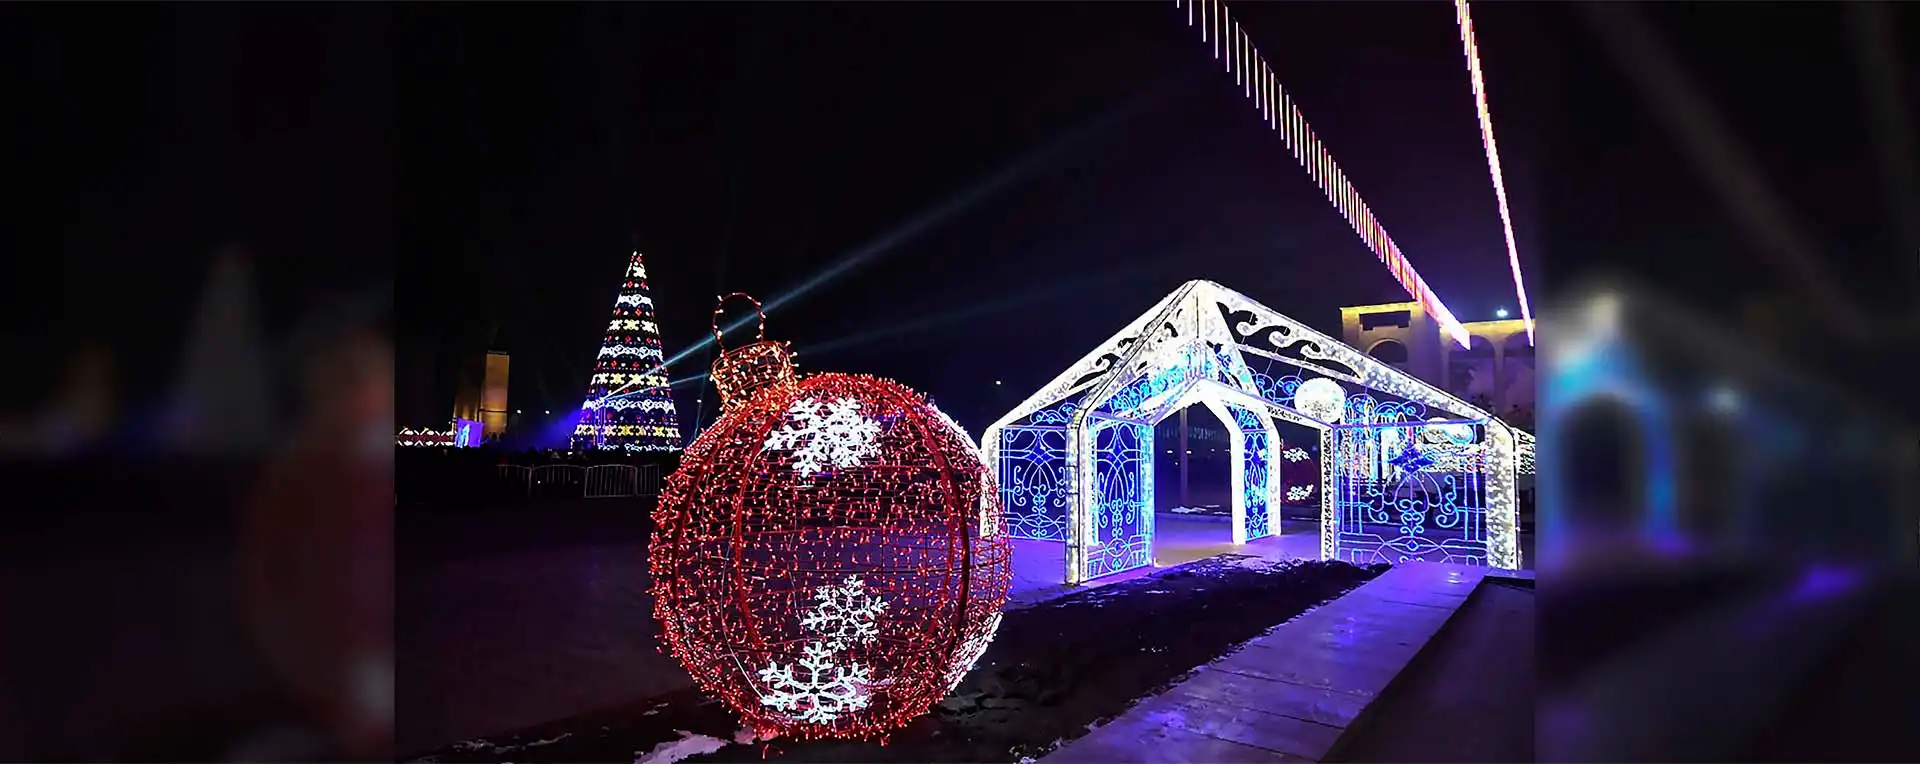 Новогоднее украшение площади Ала- Тоо, 2017-2018г.